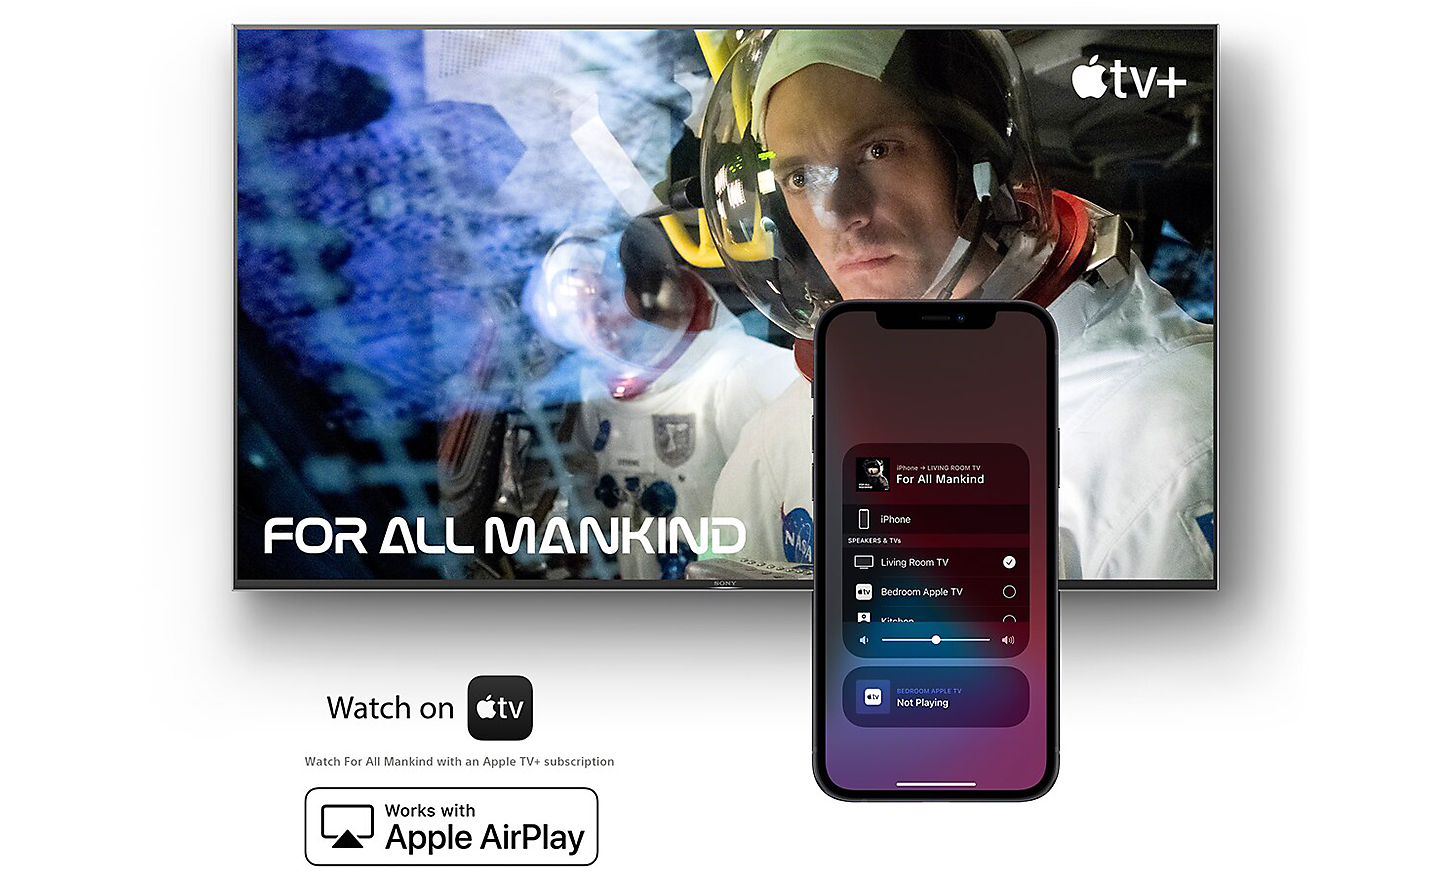 หน้าจอแสดง For All Mankind บน Apple TV โดยมีสมาร์ทโฟนอยู่ข้างหน้า